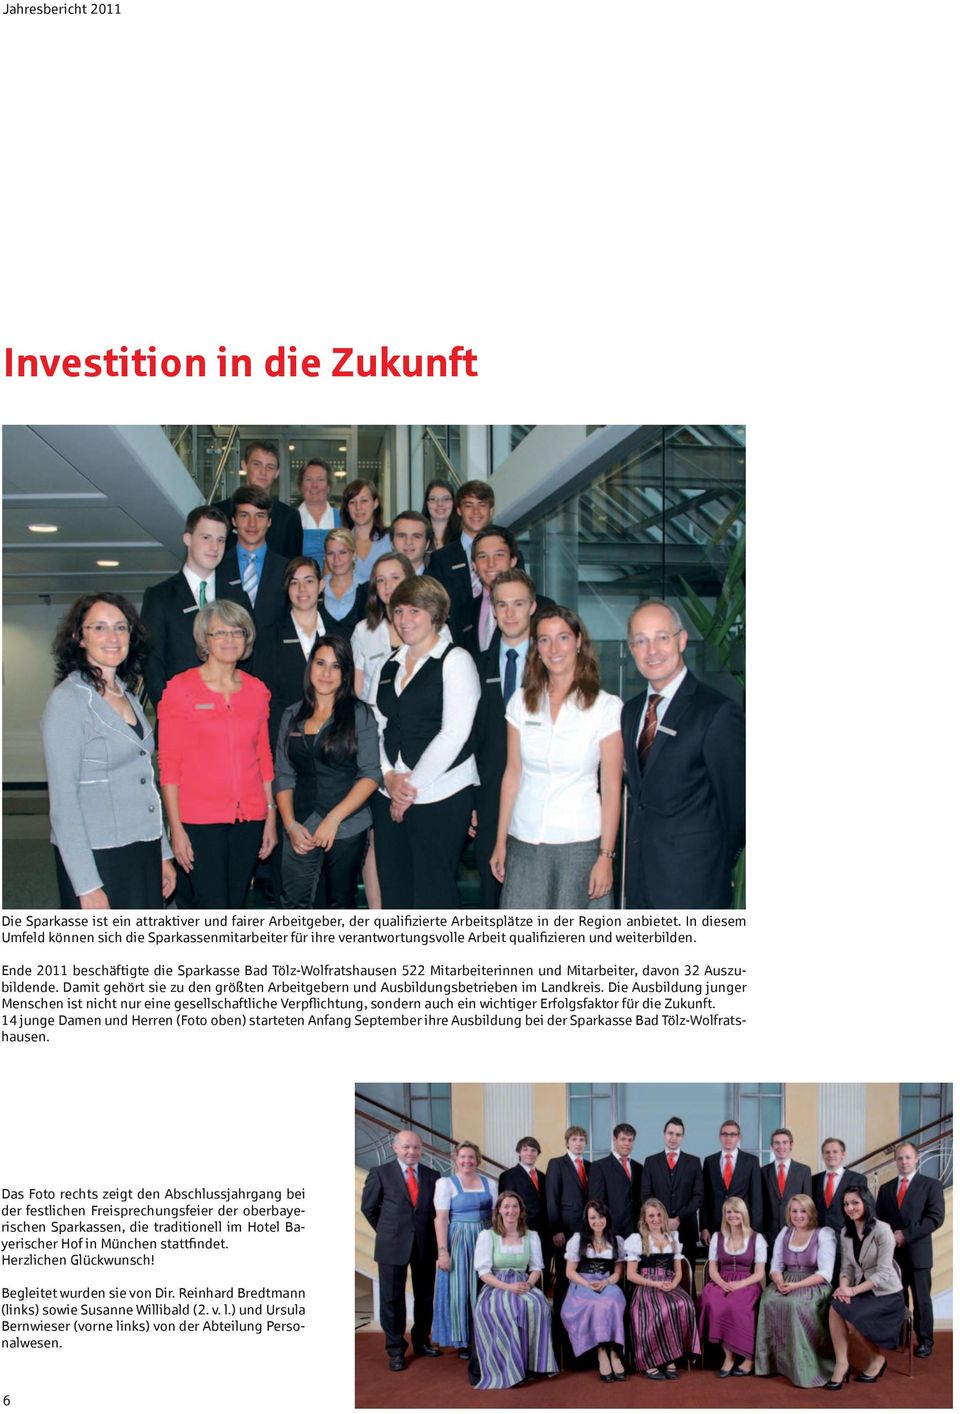 Ende 2011 beschäftigte die Sparkasse Bad Tölz-Wolfratshausen 522 Mitarbeiterinnen und Mitarbeiter, davon 32 Auszubildende.